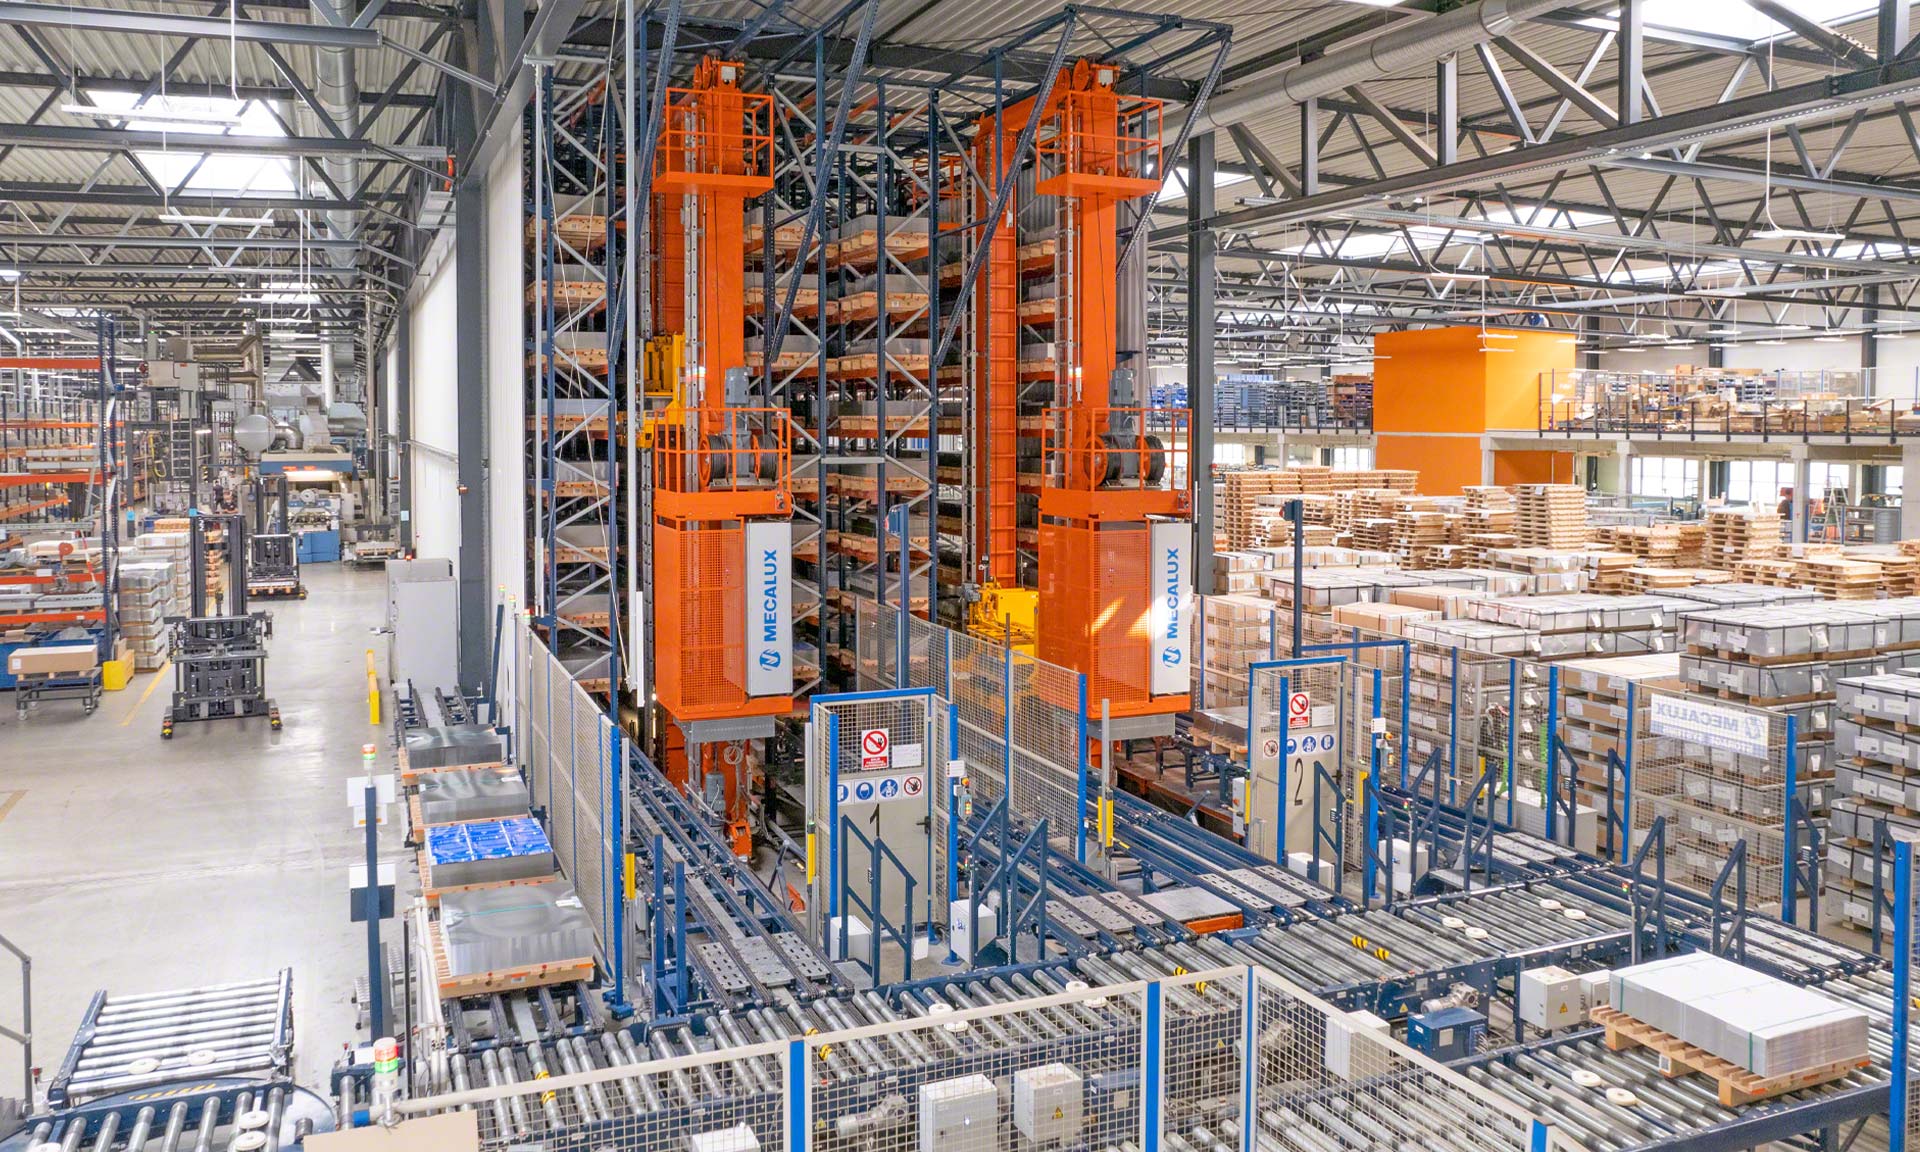 Blechwarenfabrik: najnowocześniejsza w Europie fabryka opakowań metalowych